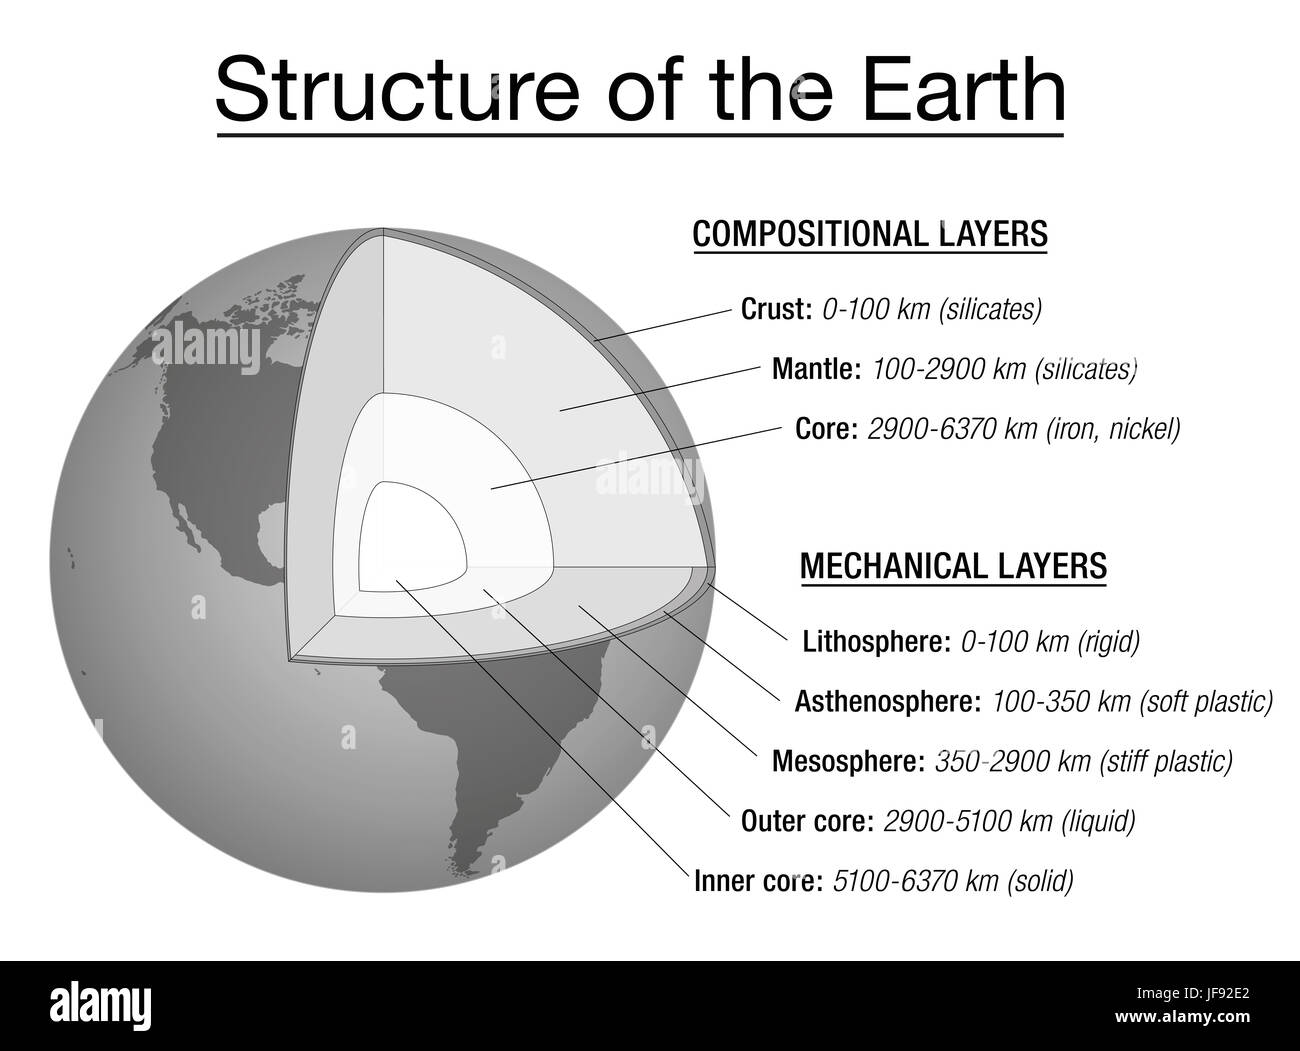 Struktur der Erde Erklärung Chart - Querschnitt und Schichten der Erden Interieur, Beschreibung, Tiefe in Kilometern, wichtigsten chemischen Elemente, Stockfoto